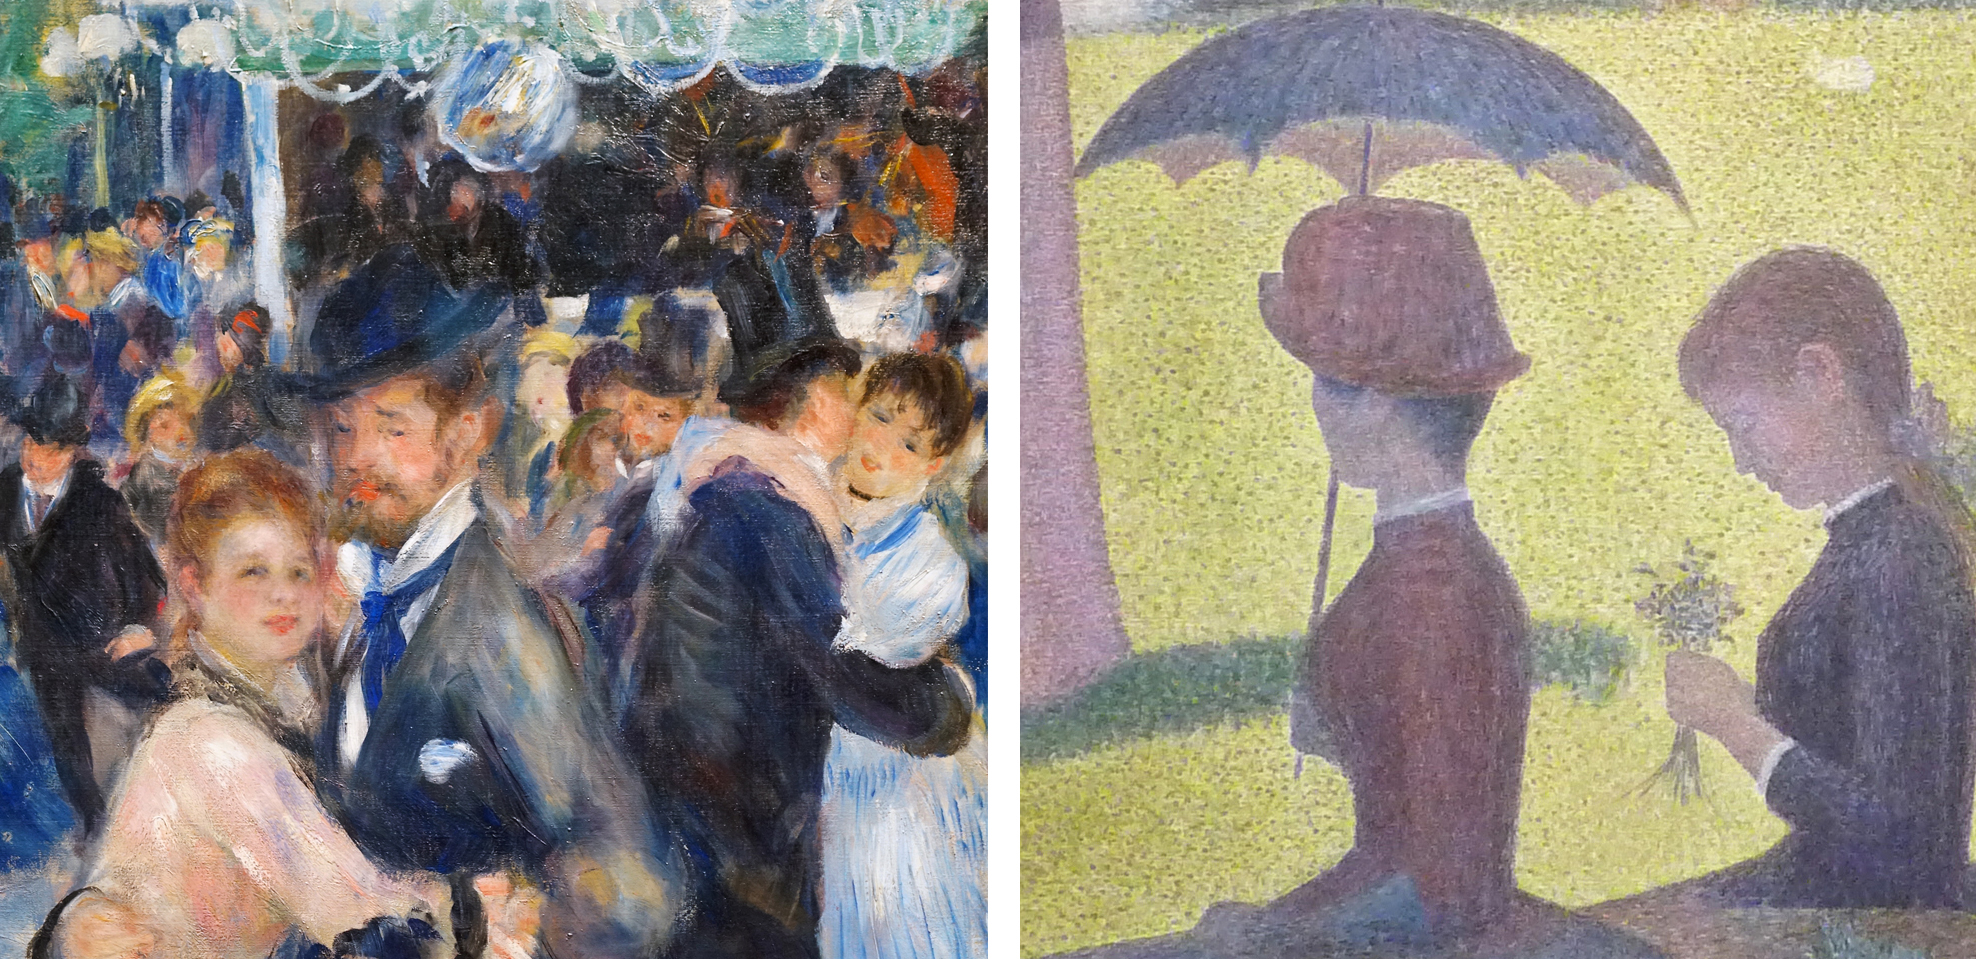 Left: Pierre-Auguste Renoir, Bal du Moulin de la Galette, detail, 1876, oil on canvas, 131 x 175 cm (Musée d’Orsay); Right: Georges Seurat, A Sunday on La Grande Jatte, detail, 1884-86, oil on canvas, 207.5 x 308.1 cm (Art Institute of Chicago)